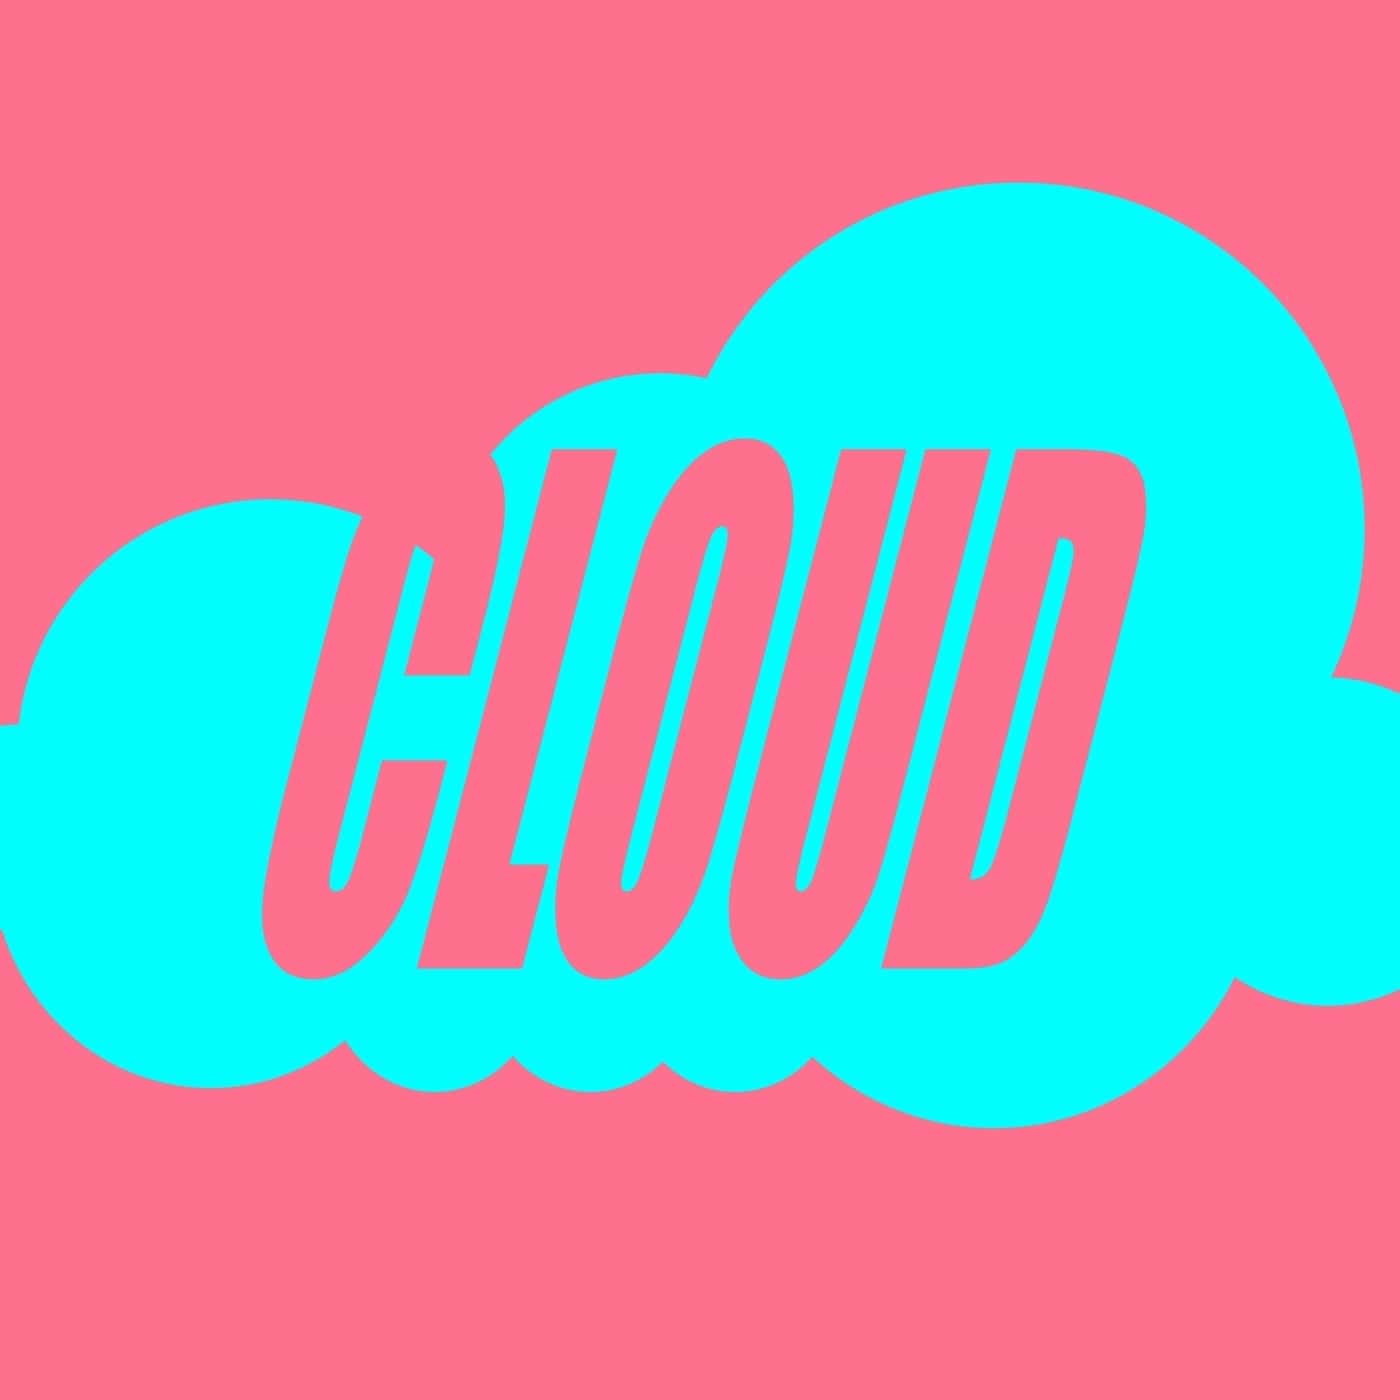 image cover: Gruuve - Cloud (Gorge Remix) / GU725